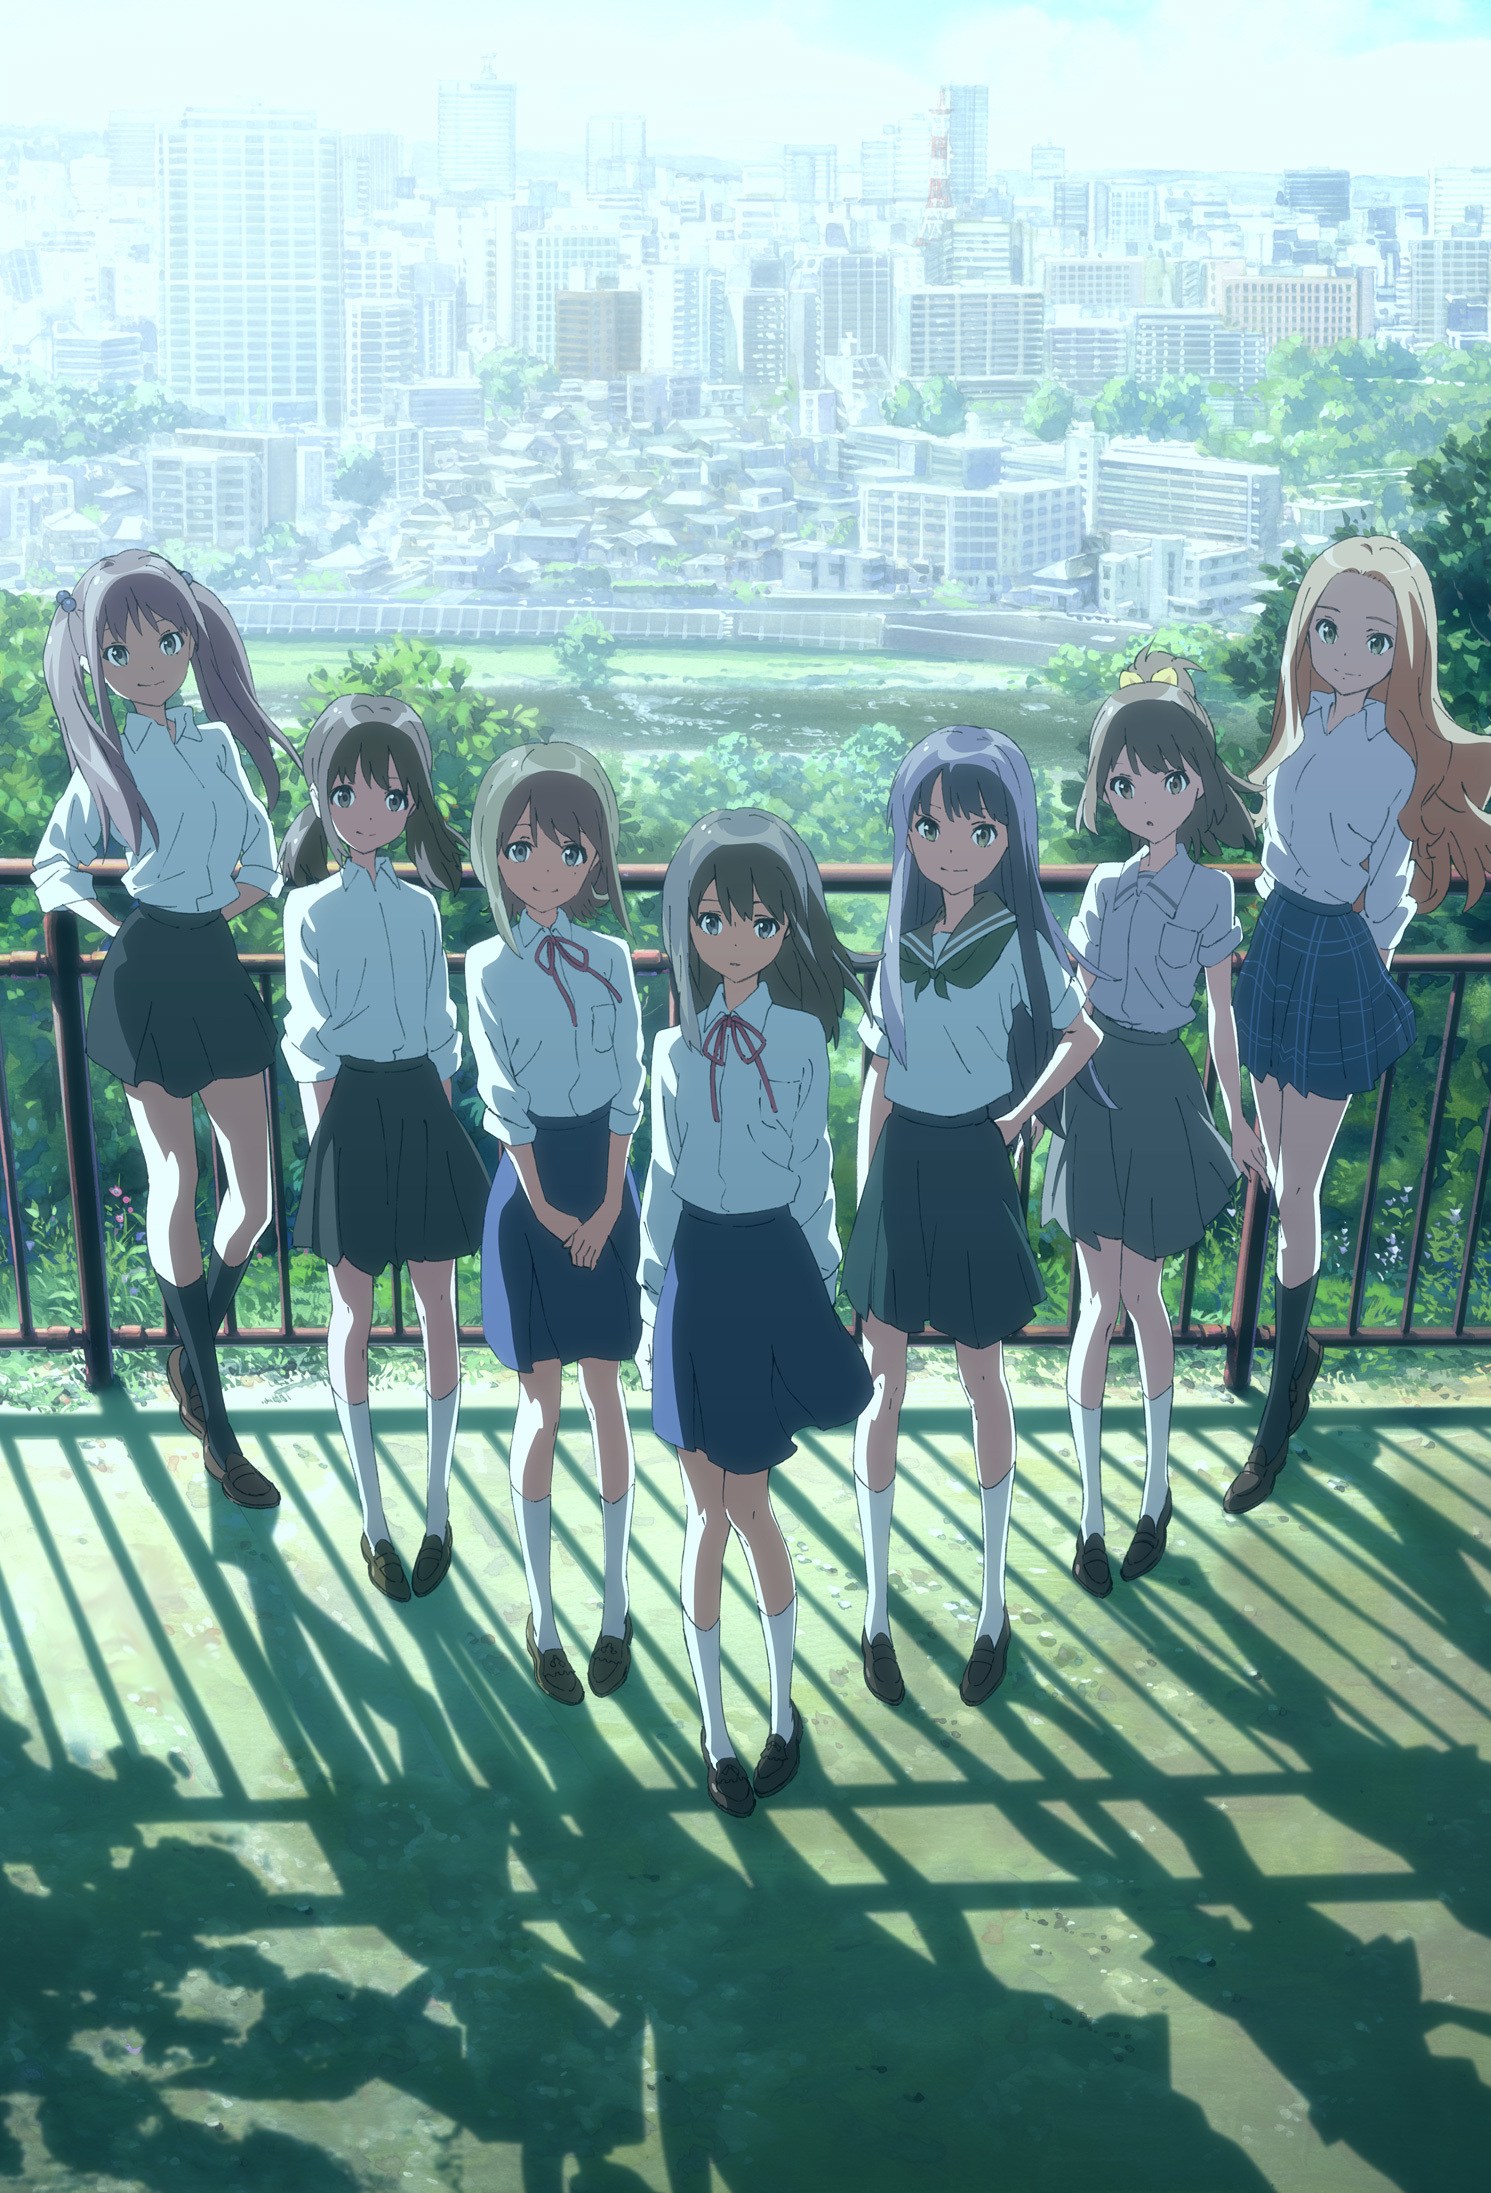 New Wake Up, Girls! TV Anime Revealed